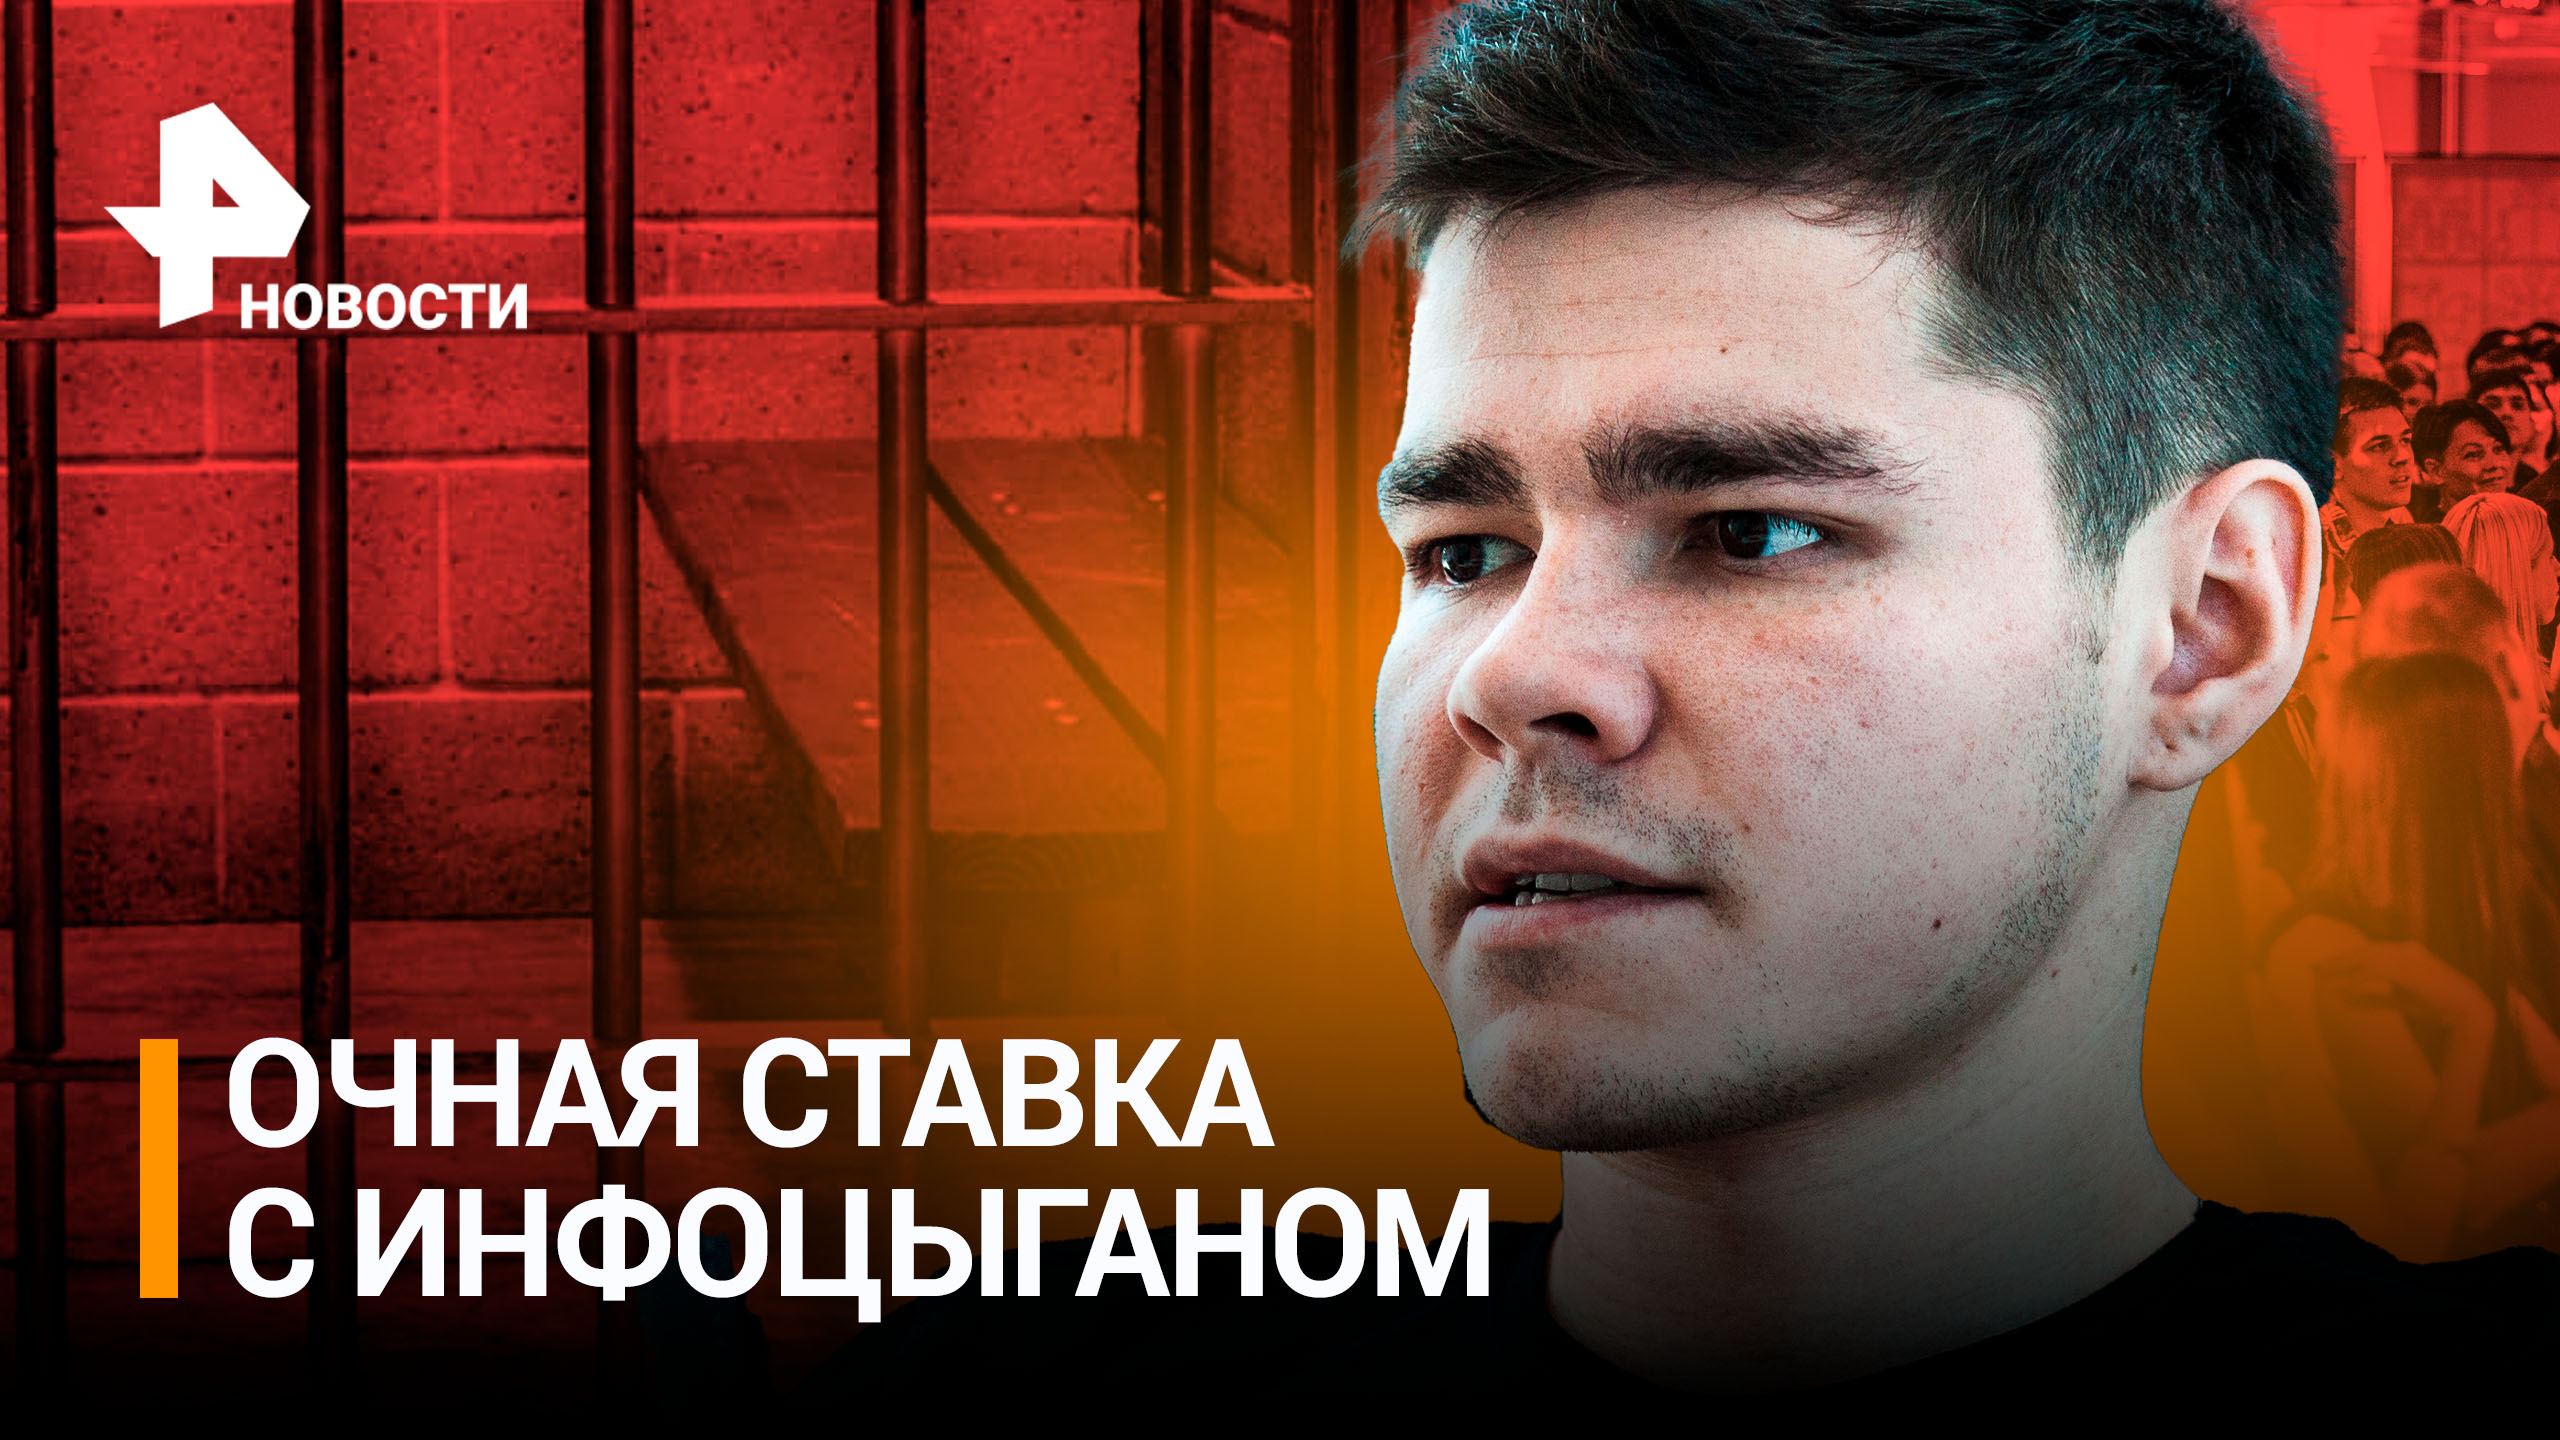 Очная ставка с инфоцыганом: блогера Шабутдинова доставили в суд. Коучу грозит до 10 лет за решеткой